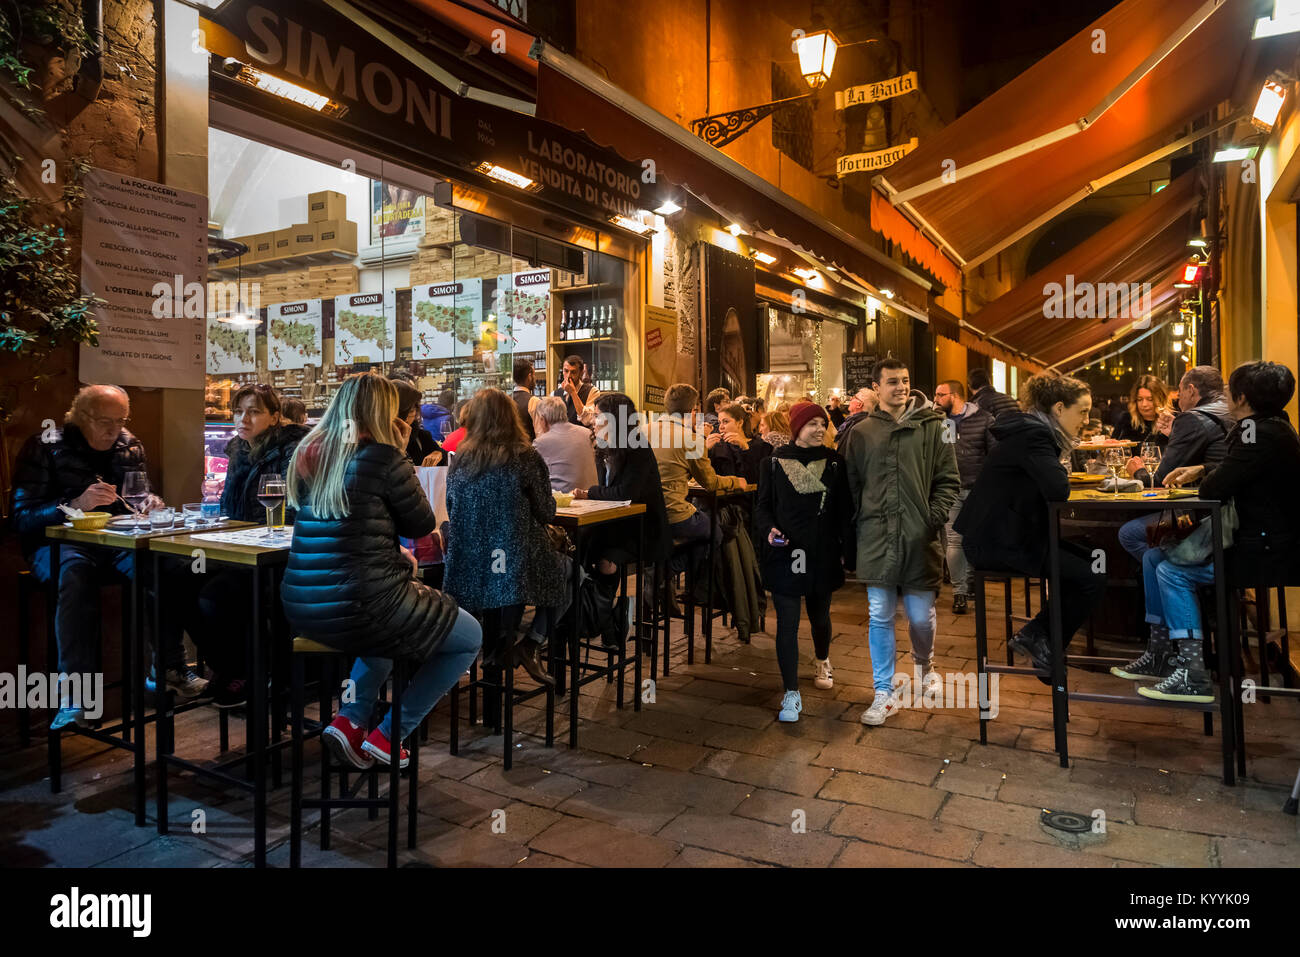 Les gens assis à boire et manger dans les restaurants, cafés et bars dans la Via Pescherie Vecchie, une rue de la ville de Bologne, Italie pendant la nuit Banque D'Images